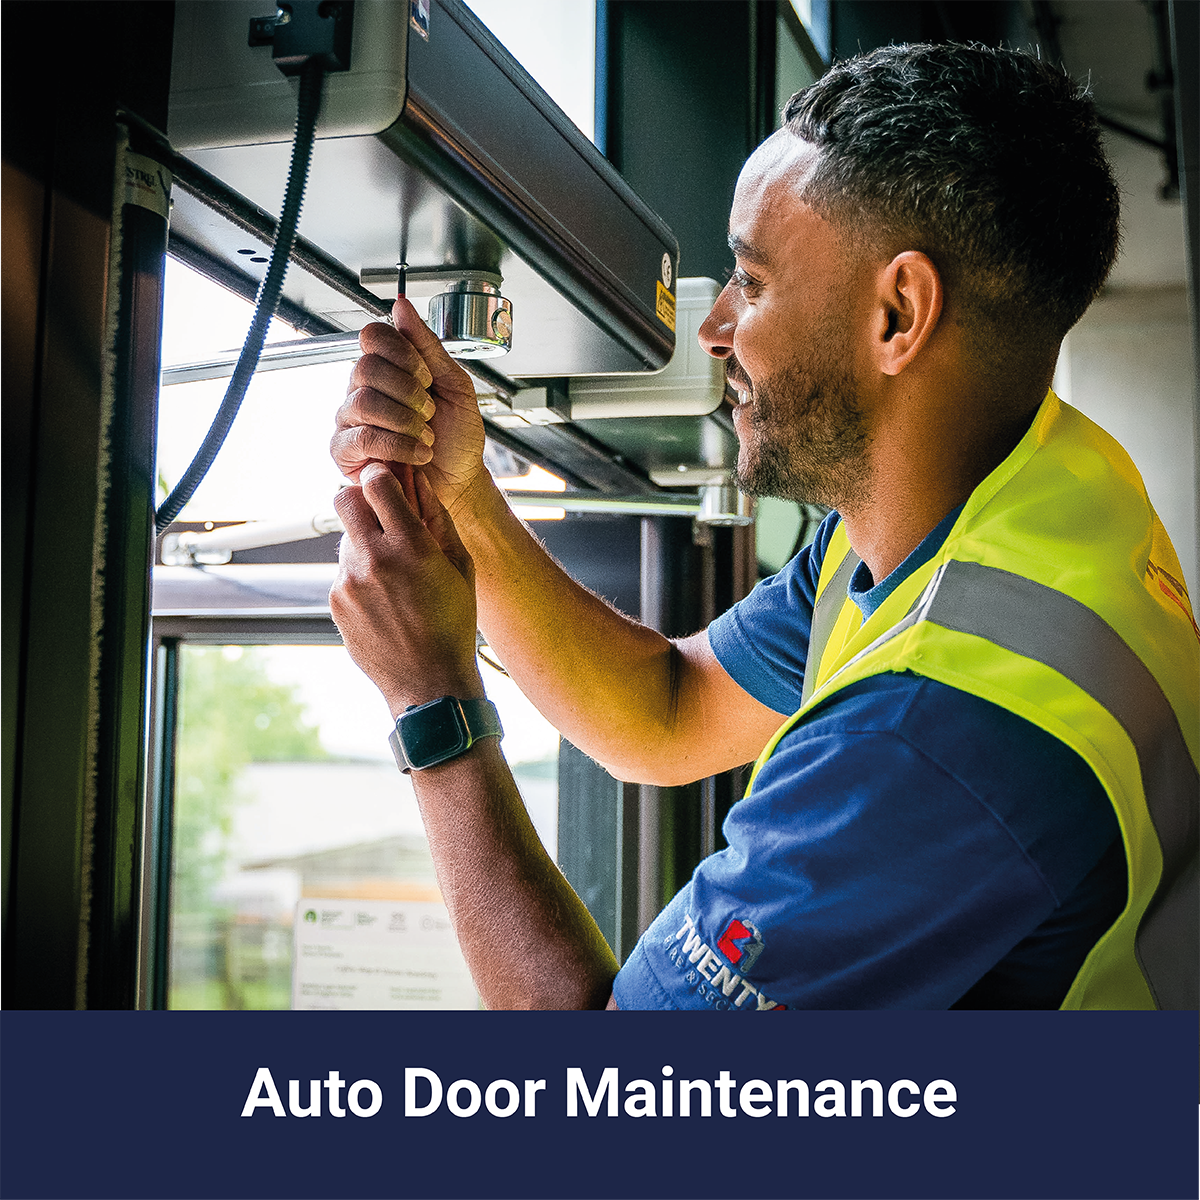 Auto Door Maintenance